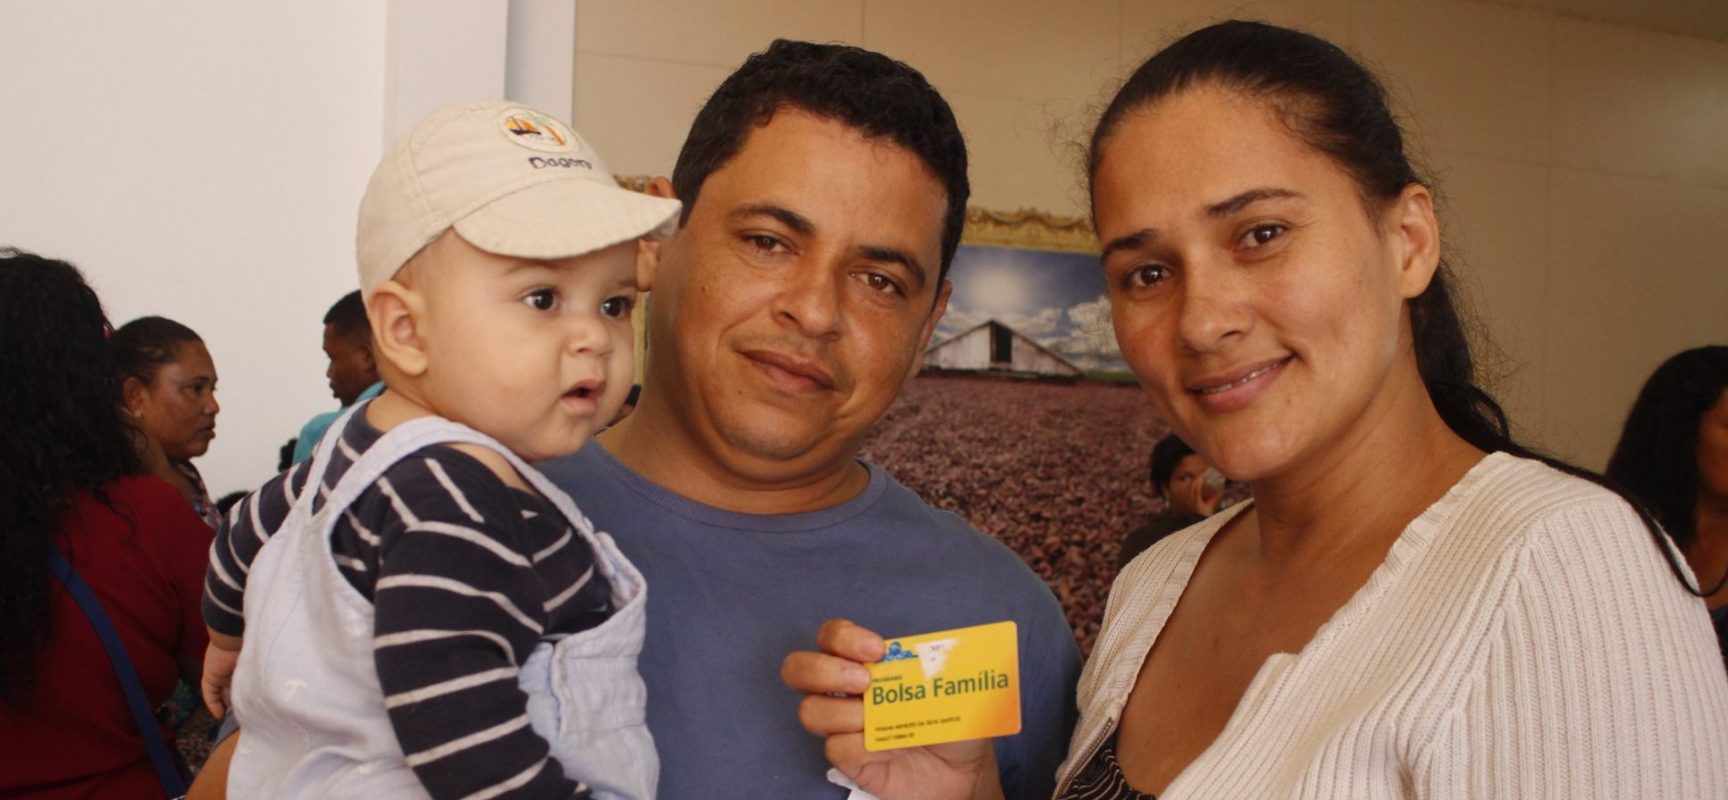 Nova entrega dos cartões do Bolsa Família em Ilhéus será realizada nesta quinta (11)